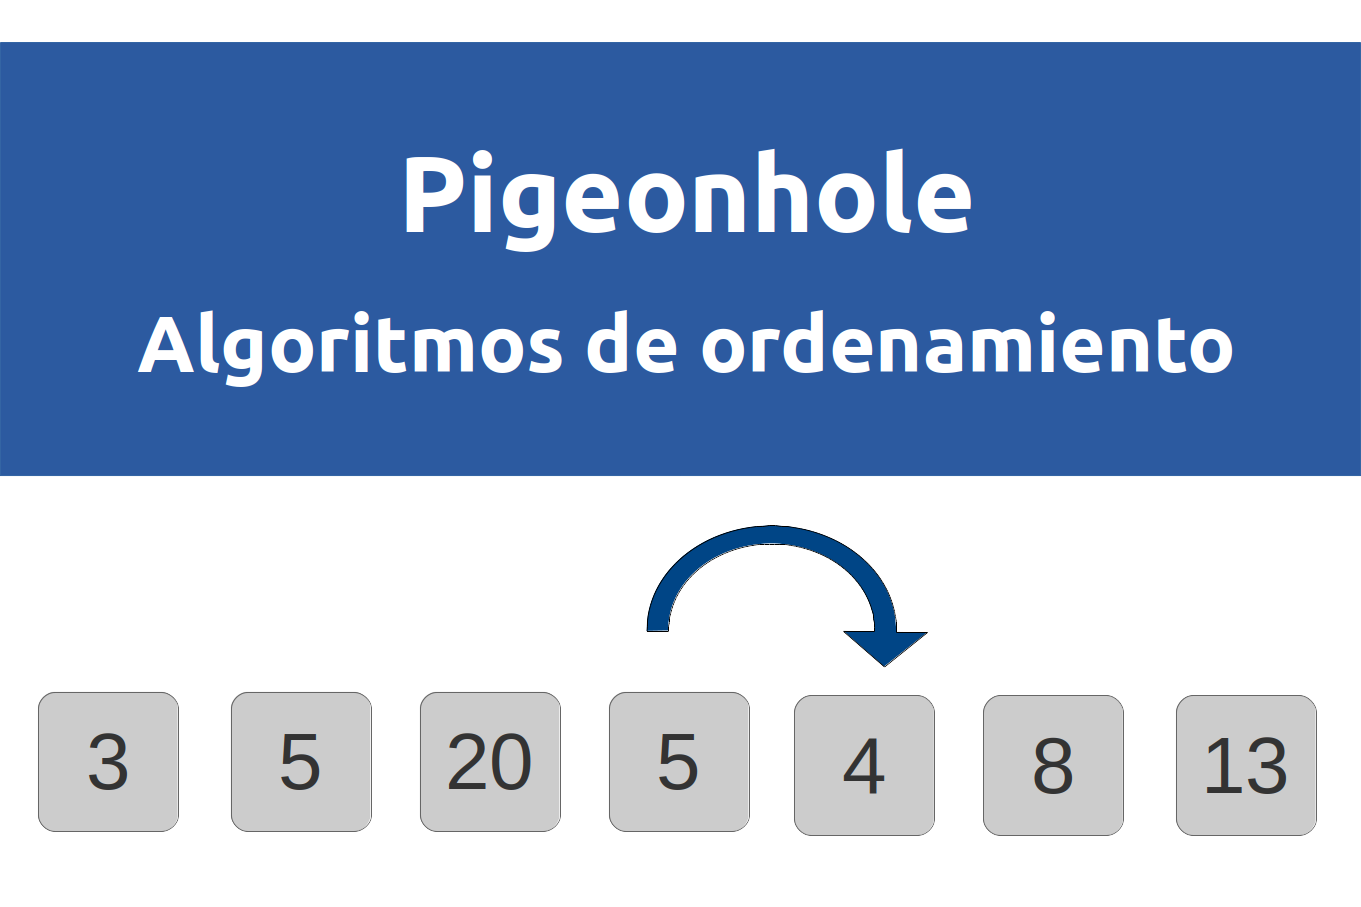 Pigeonhole - Algoritmos de ordenamiento